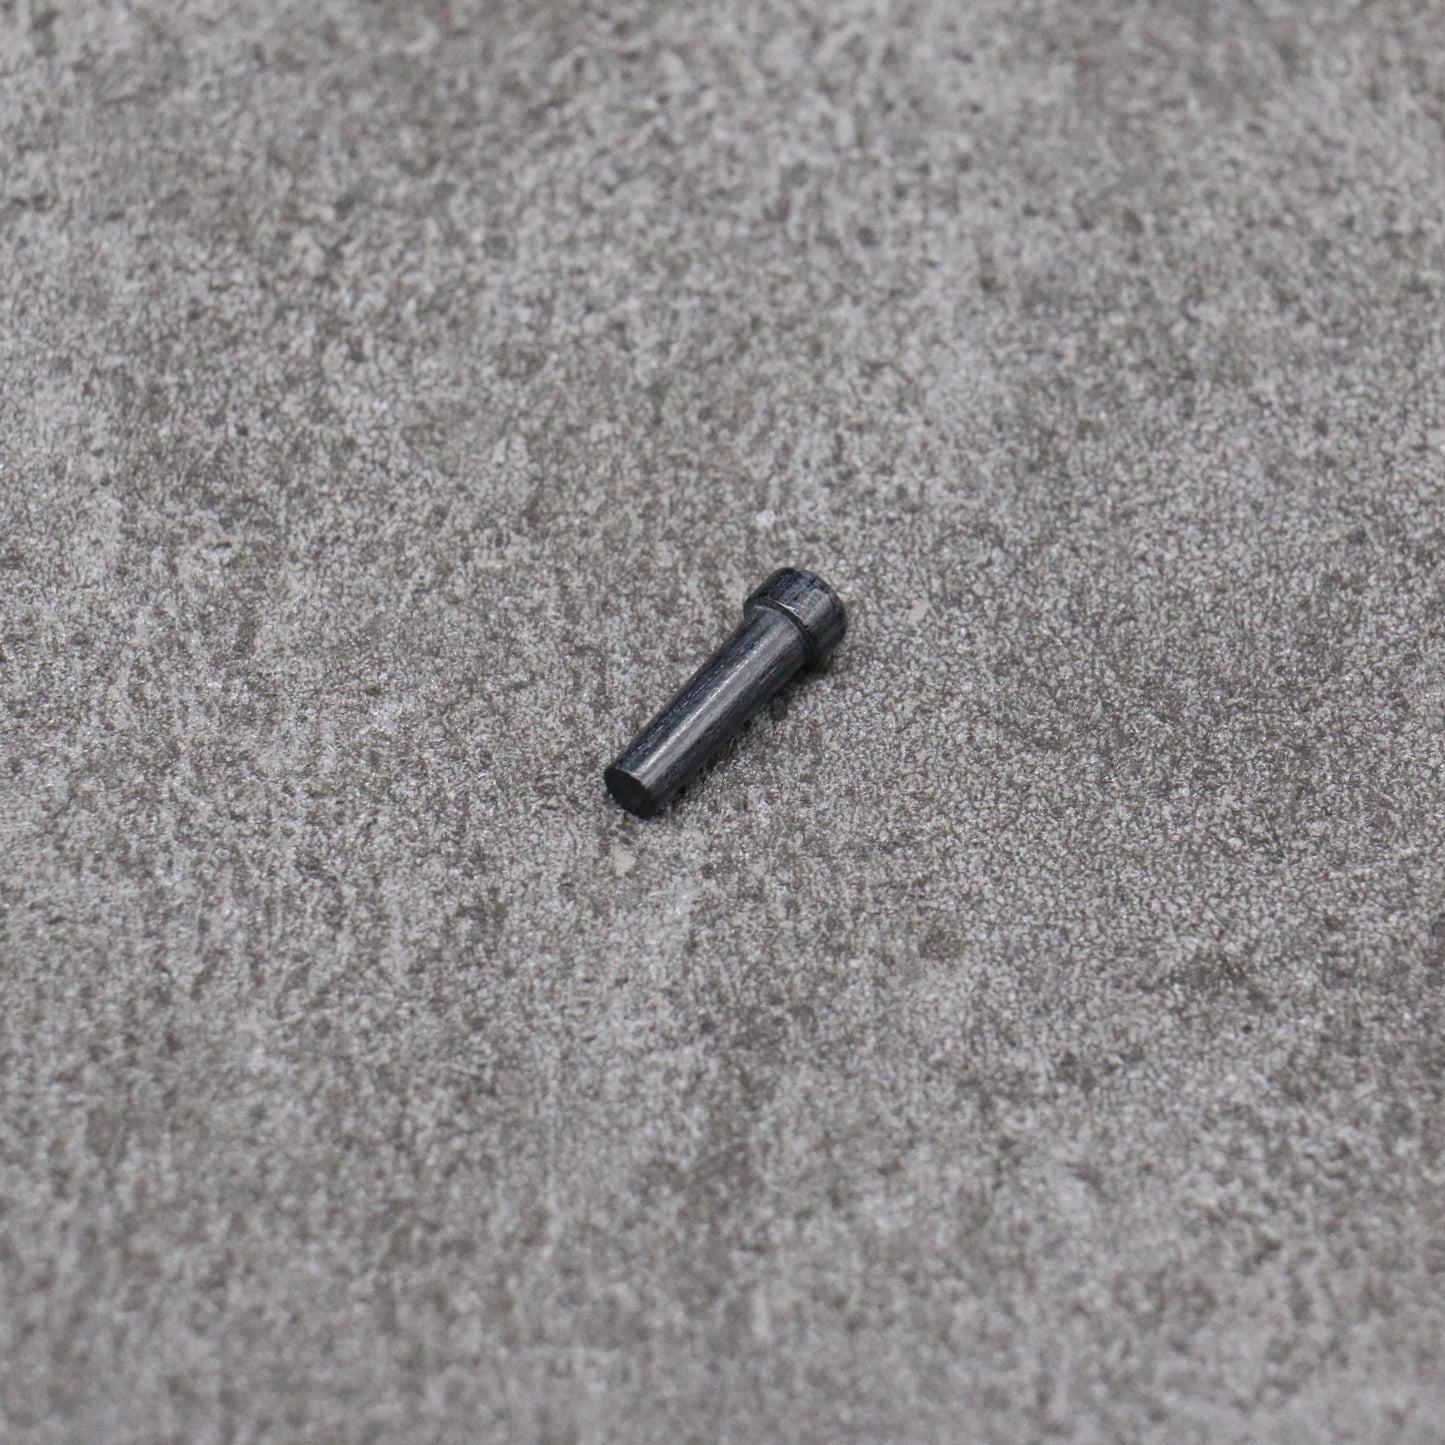 黒石目 朴 鞘 120mm ペティーナイフ用 合板ピン付き Kaneko - 清助刃物